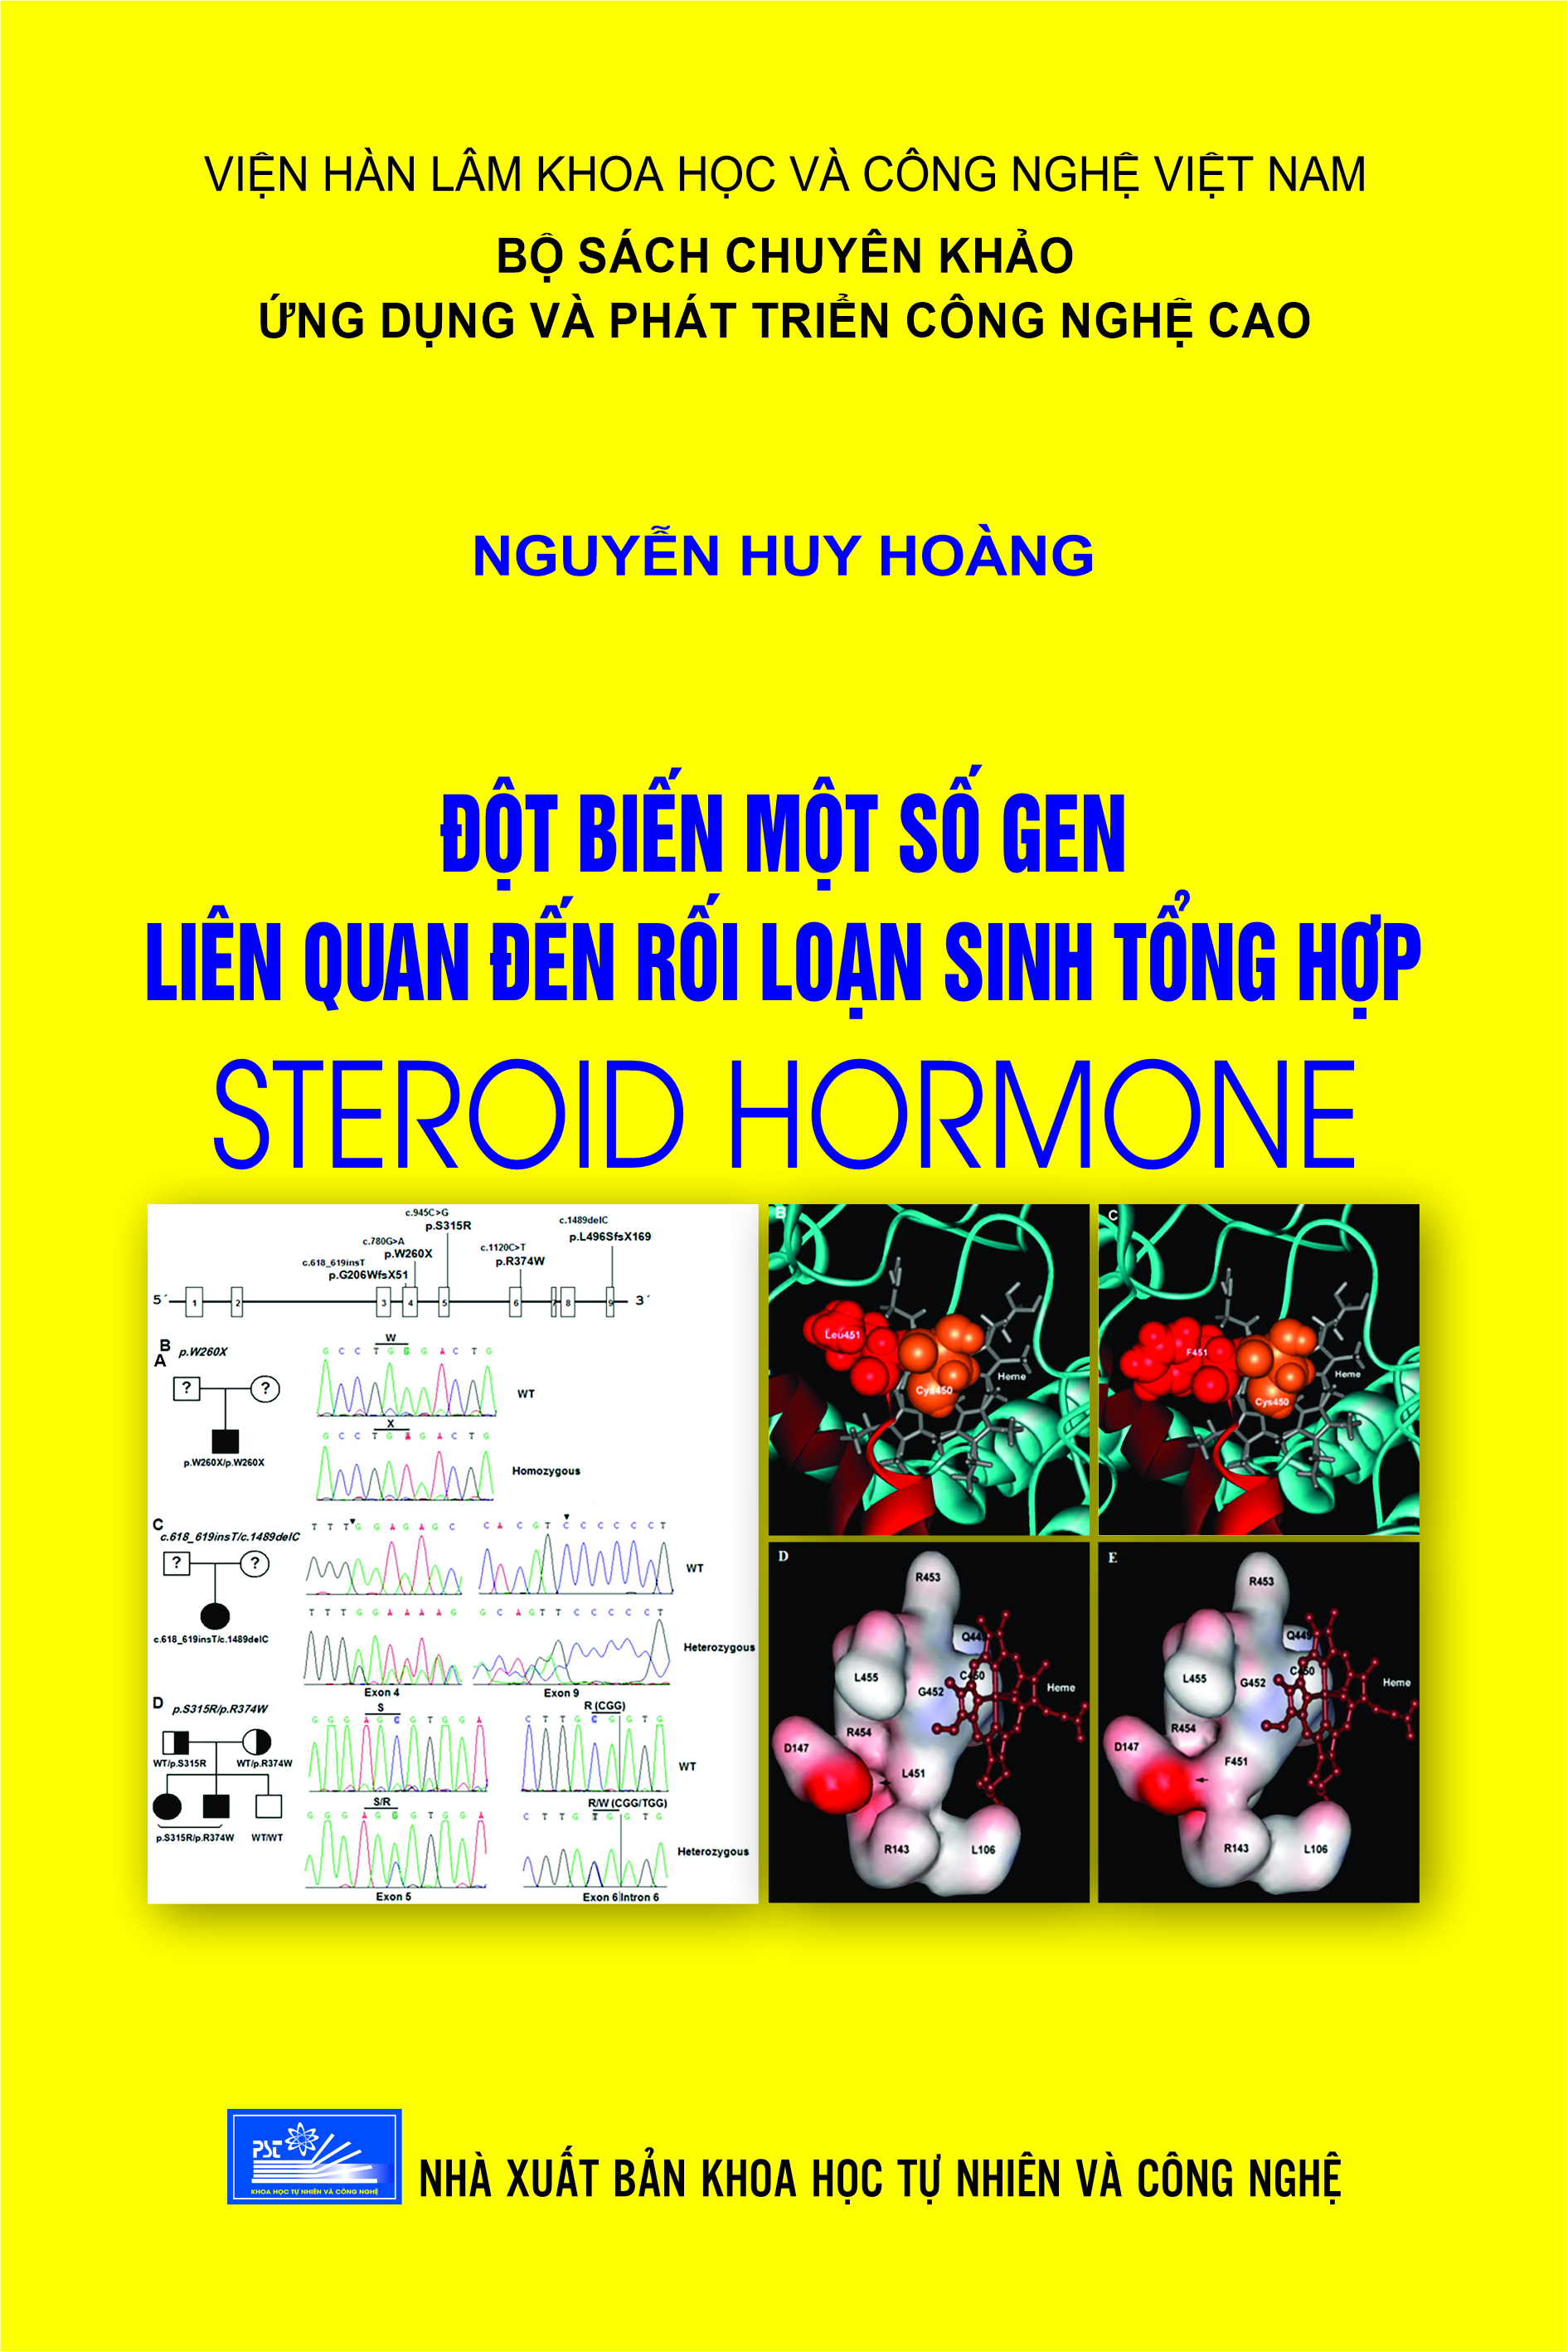 Đột biến một số gen liên quan đến rối loạn sinh tổng hợp Steroid hormone